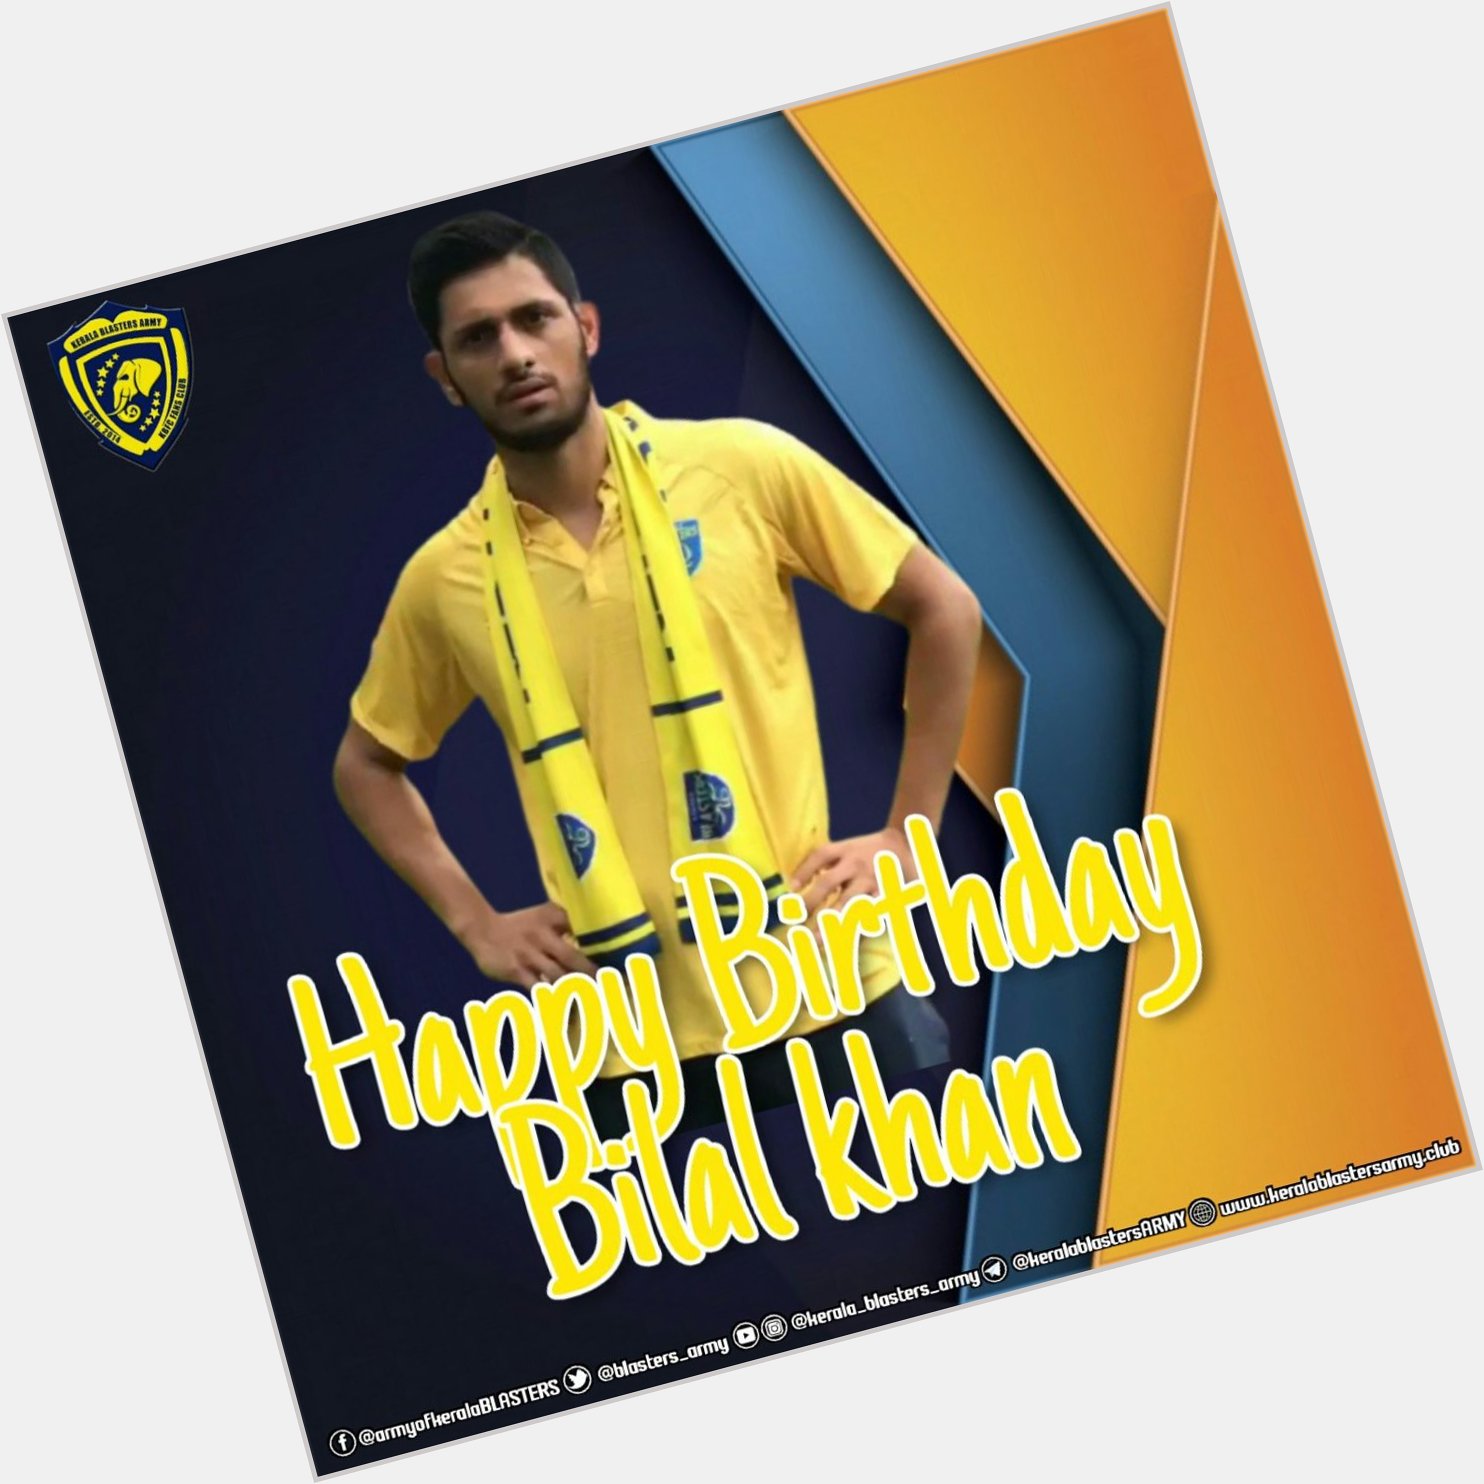 Happy Birthday Bilal Khan
Wishing You a wonderful B\DAY   